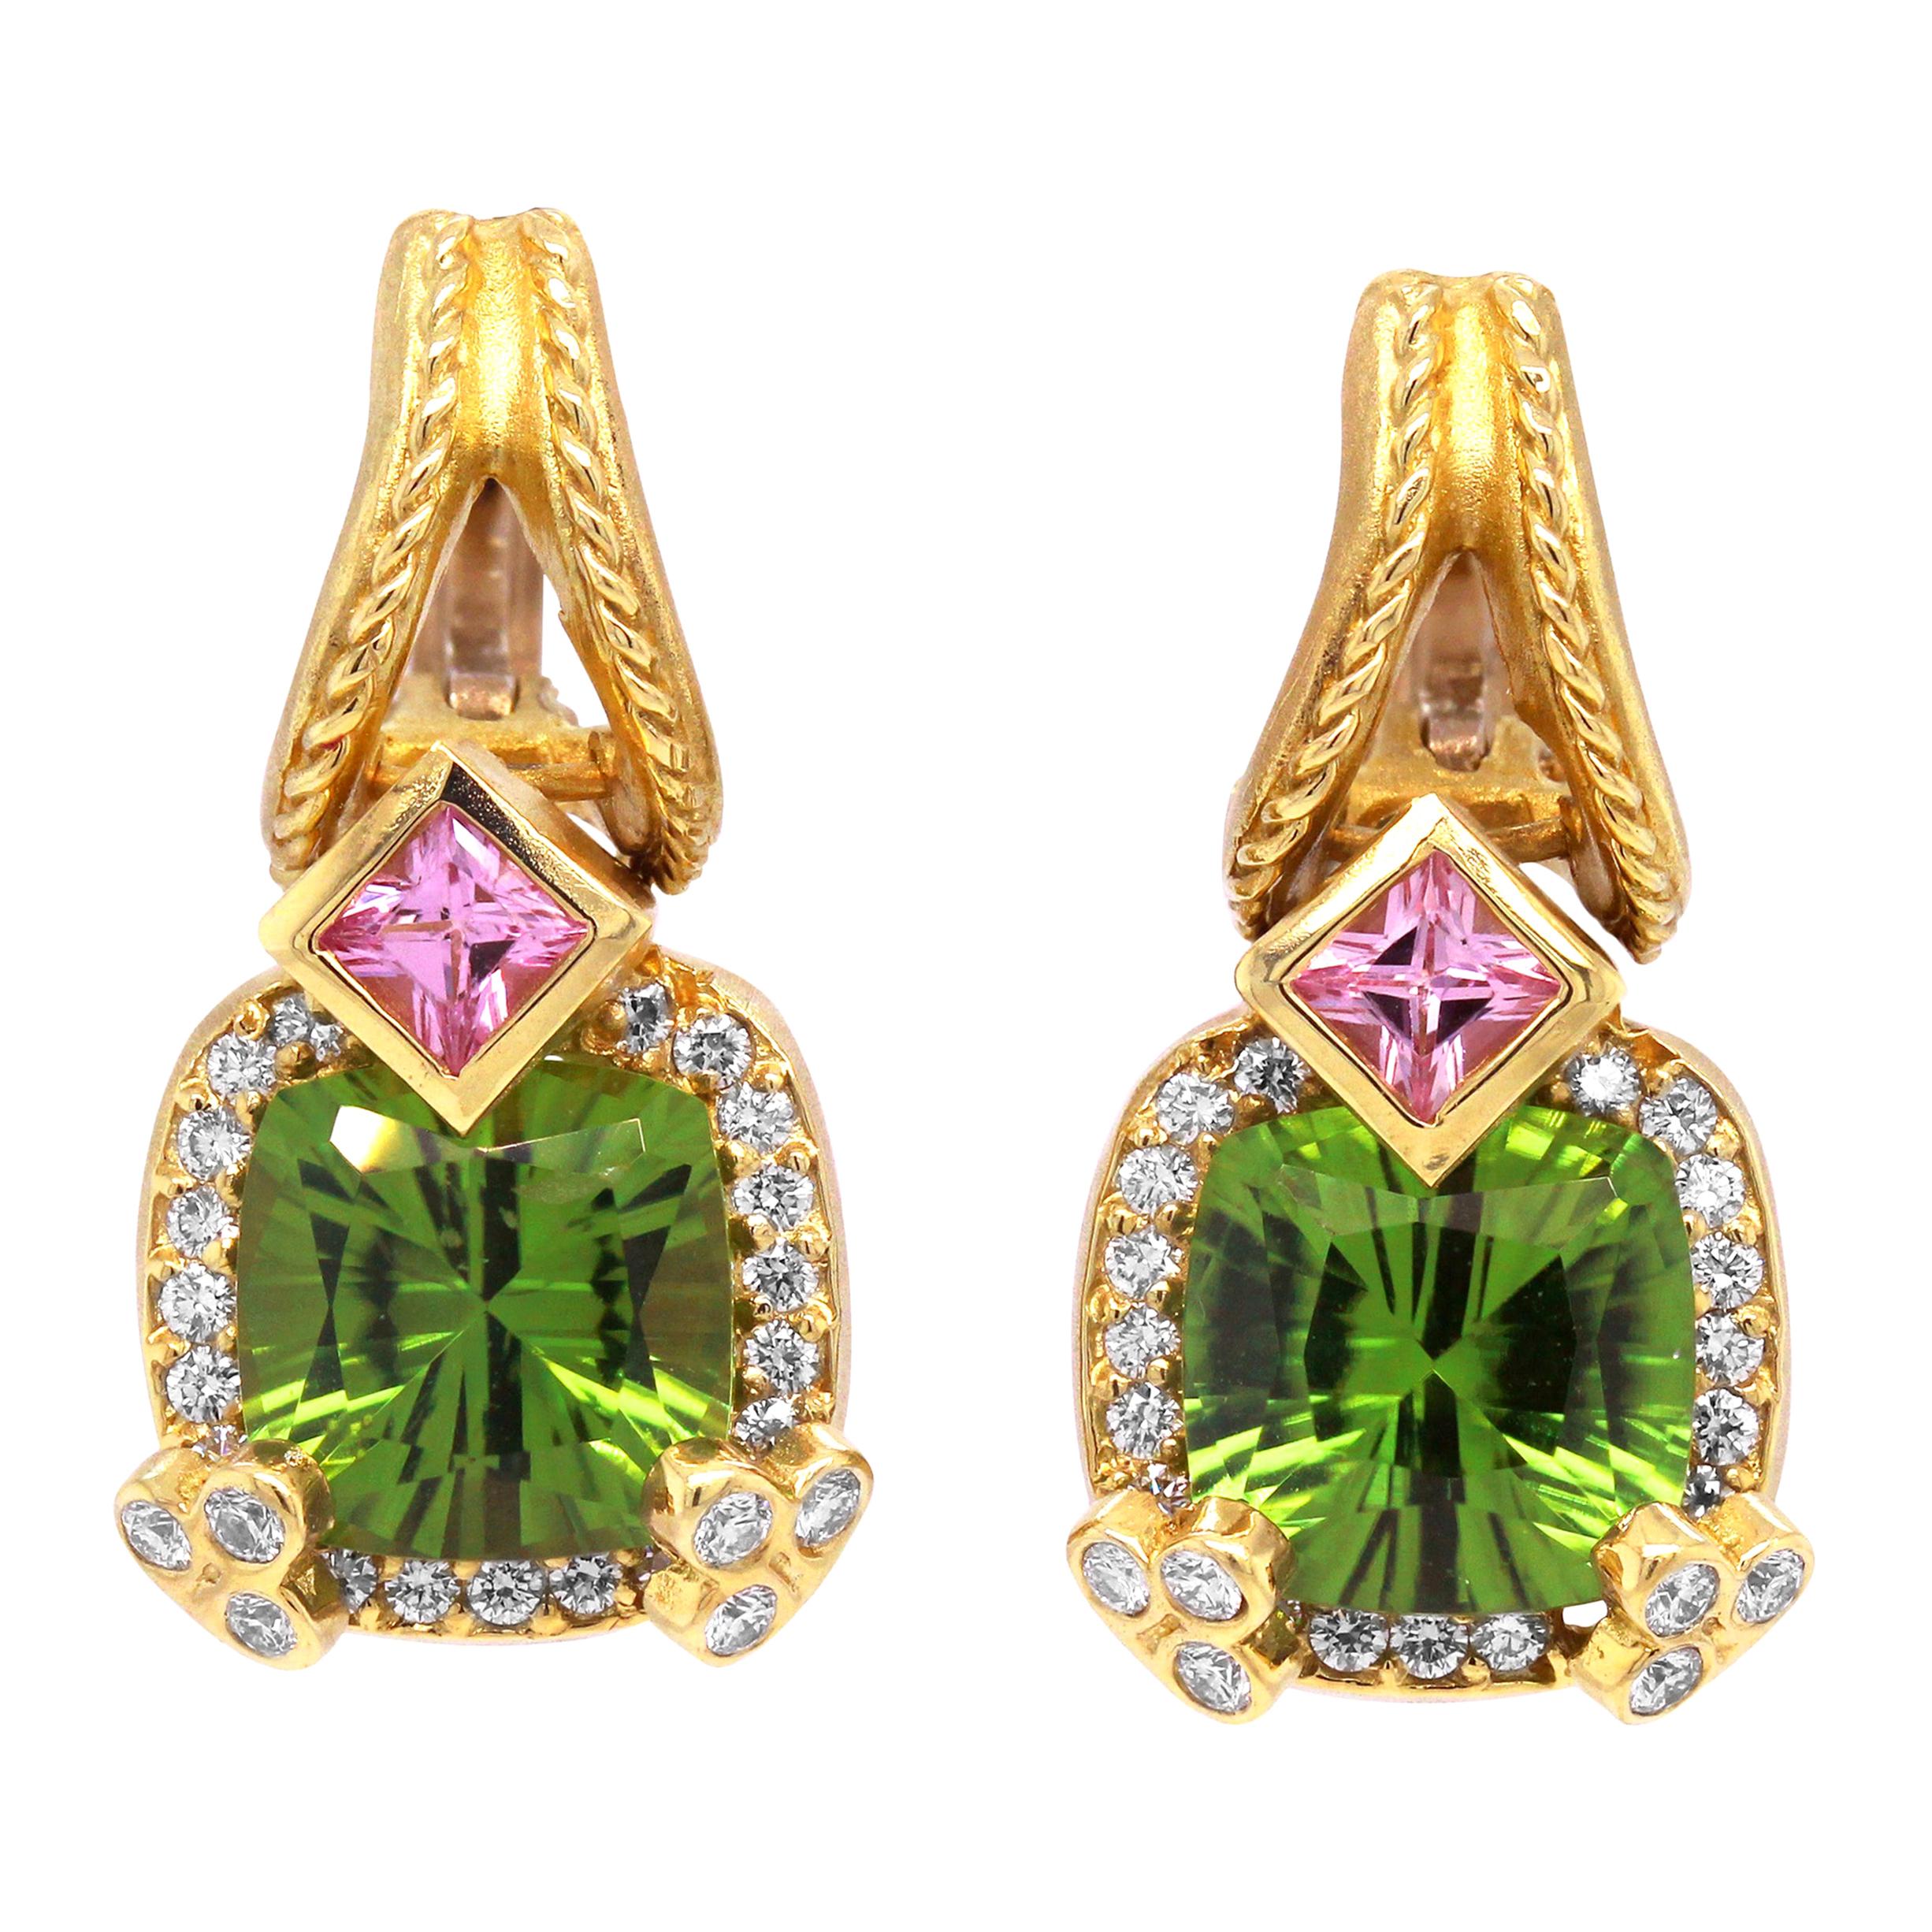 Stambolian - Boucles d'oreilles pendantes en or 18 carats, diamants, péridot et saphir rose